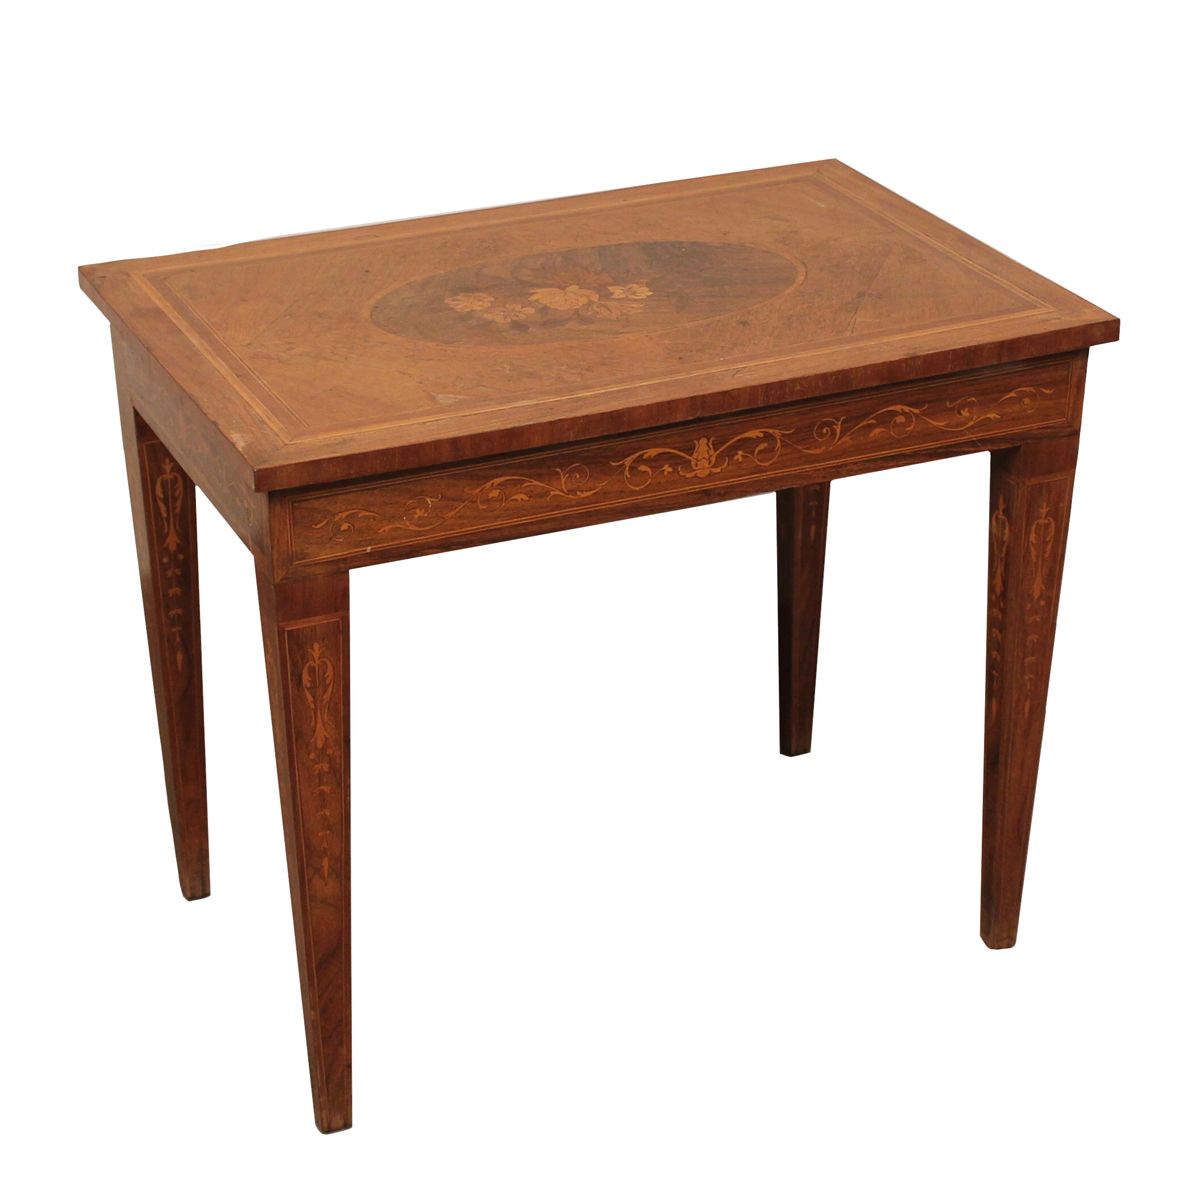 TAVOLINO BASSO - LOW TABLE Madera con incrustaciones de motivos ornamentales. Si&hellip;